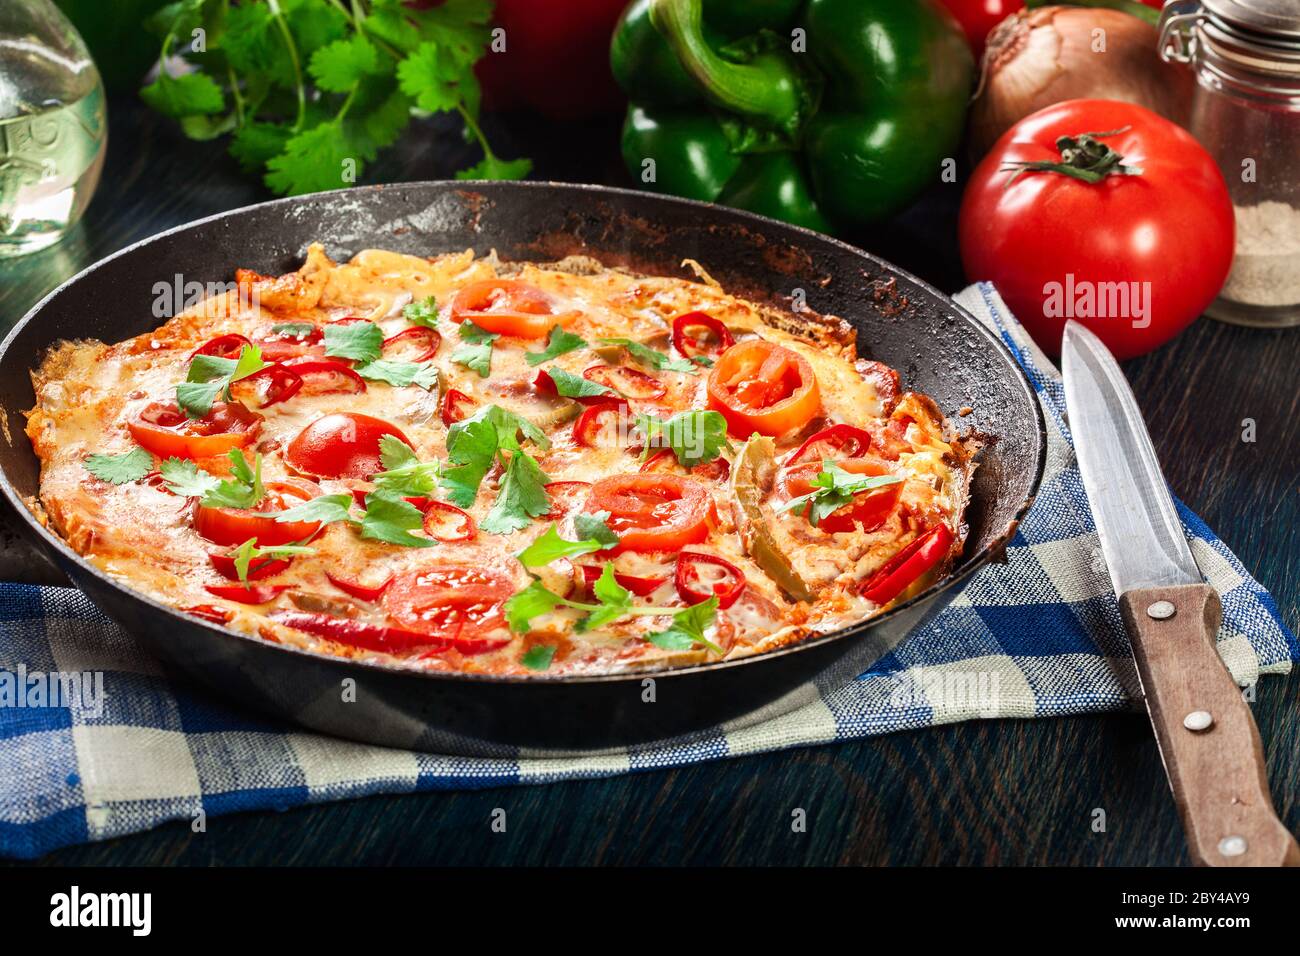 Frittata fait d'oeufs, saucisse chorizo, poivron rouge, poivron vert, tomates, fromage et piment dans une poêle sur table en bois. Cuisine italienne Banque D'Images